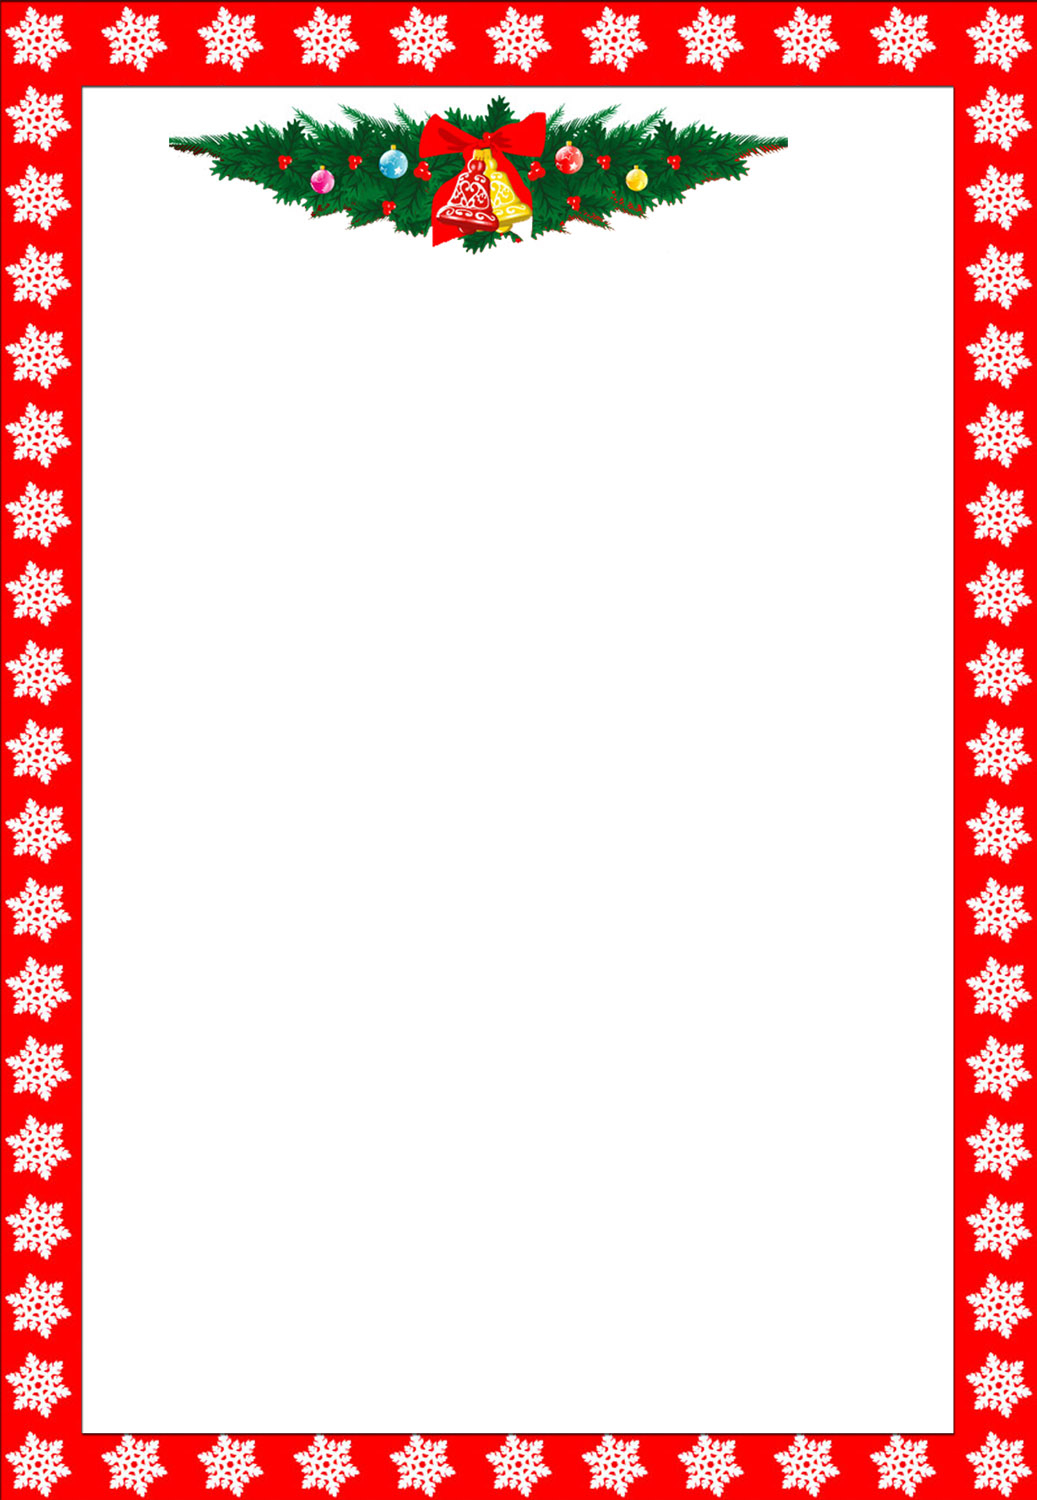 Free Printable Christmas Stationary Borders Trials Ireland - Free Printable Page Borders Christmas